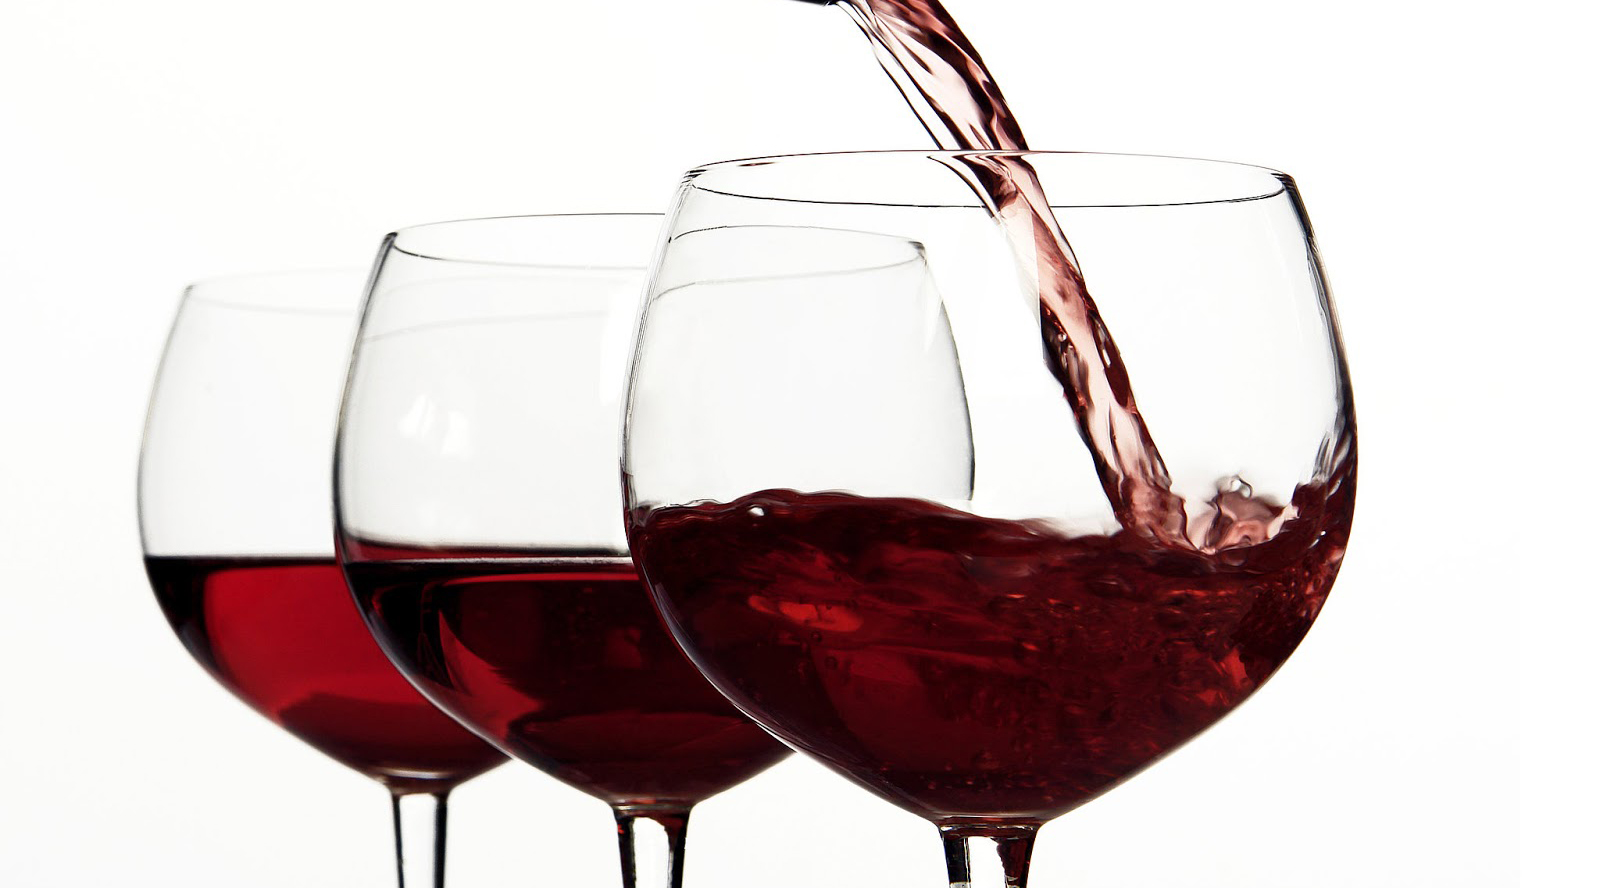 tre-aziende-vitivinicole-di-roccanova-inserite-nella-guida-ai-migliori-vini-di-basilicata